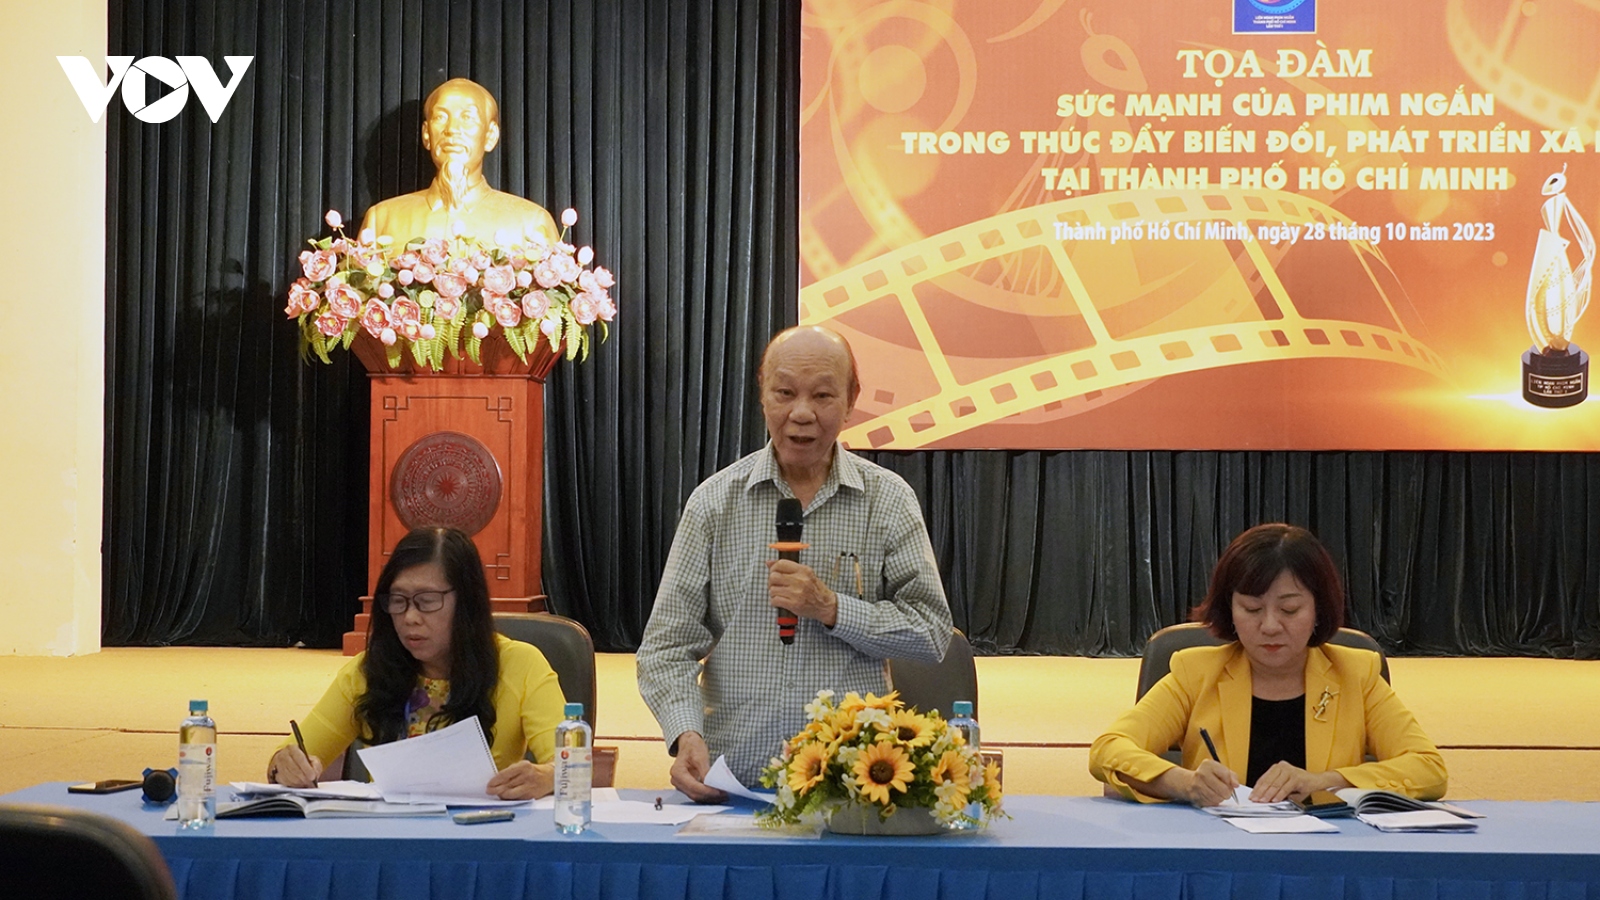 Nhà làm phim ngắn của Việt Nam rất thiệt thòi